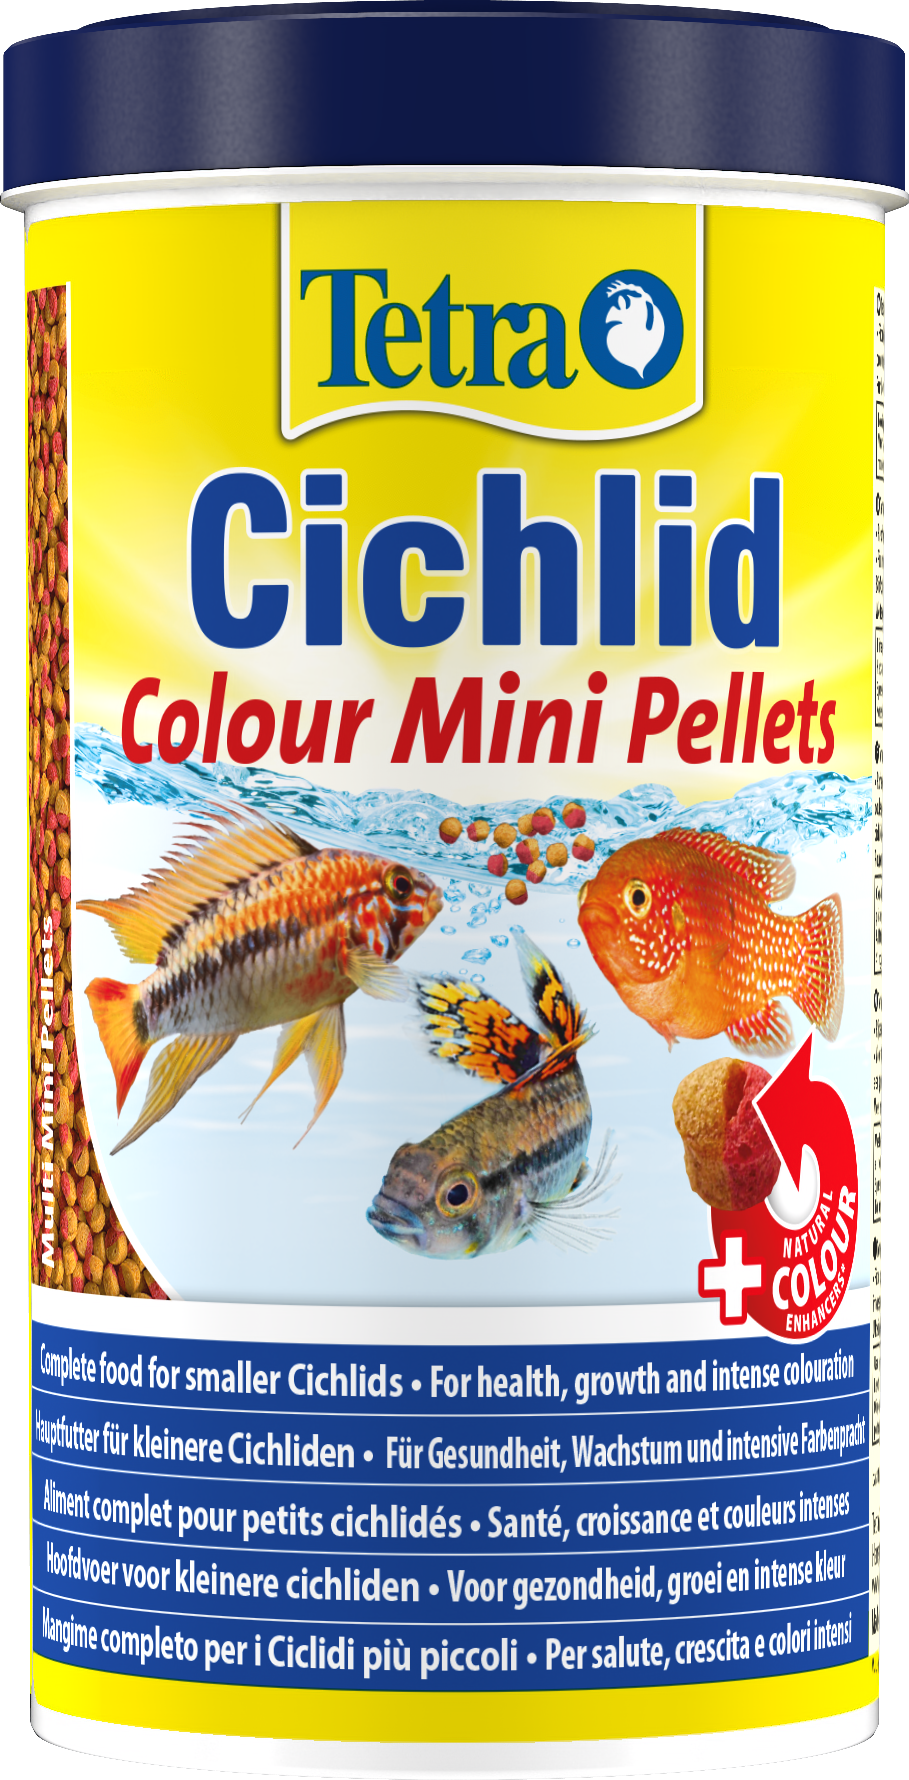 Tetra Cichlid Colour Mini Pellets: Tetra